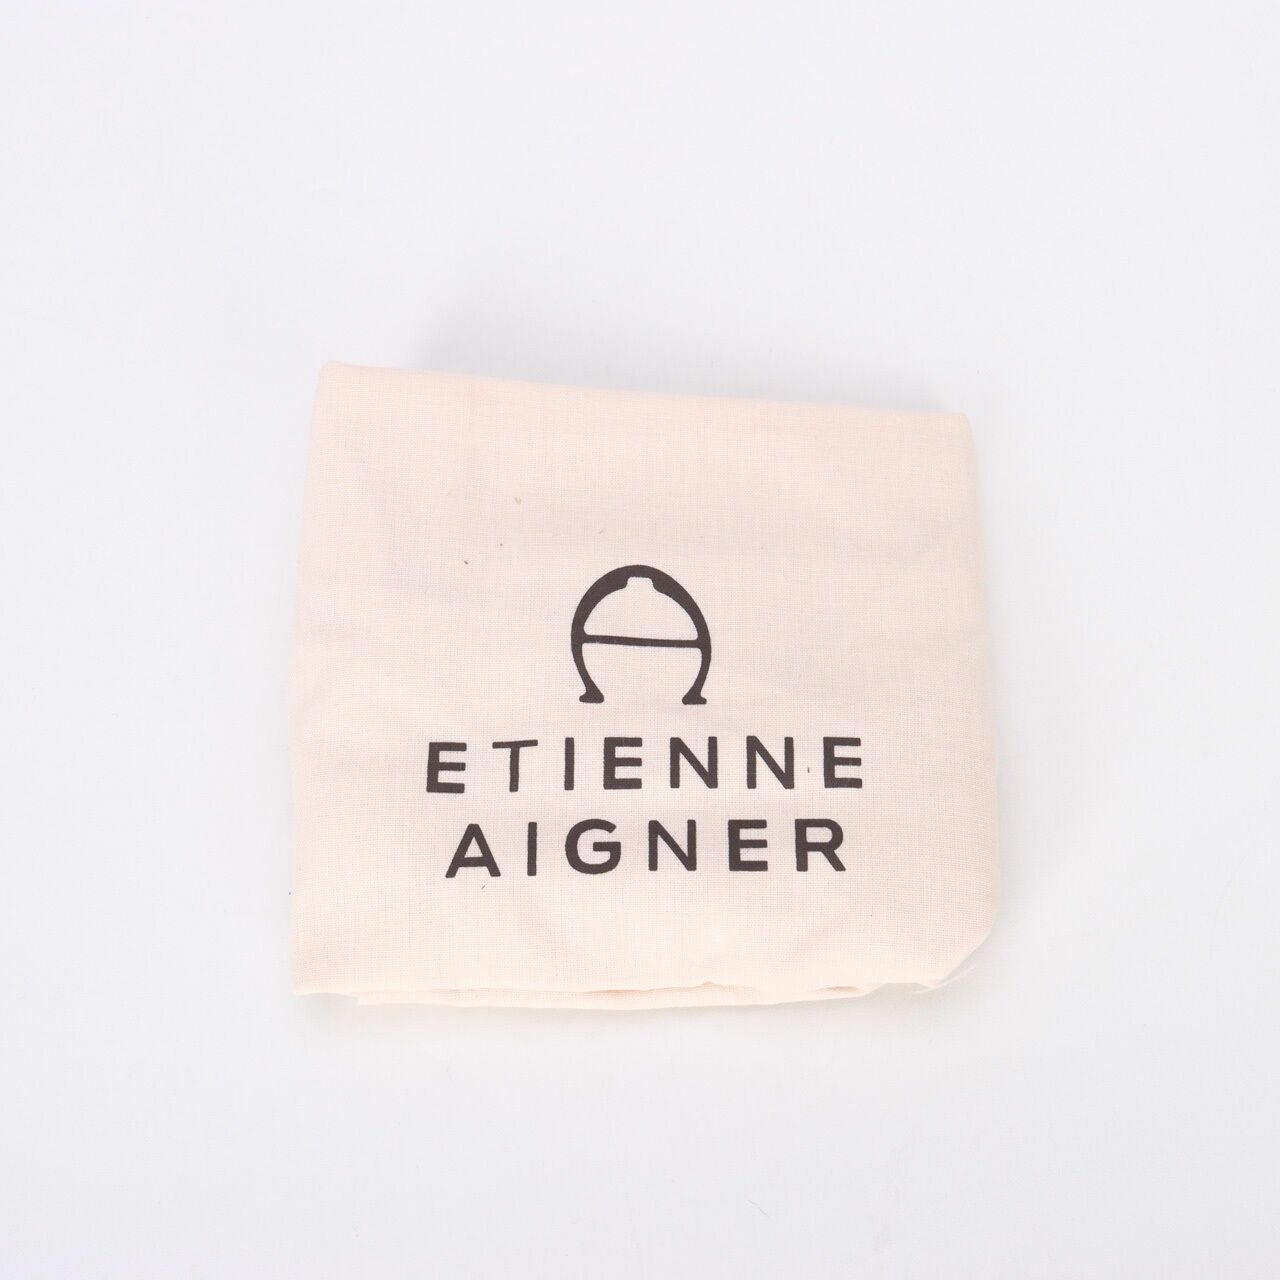 Etienne Aigner Adeline Black Bucket Shoulder Bag